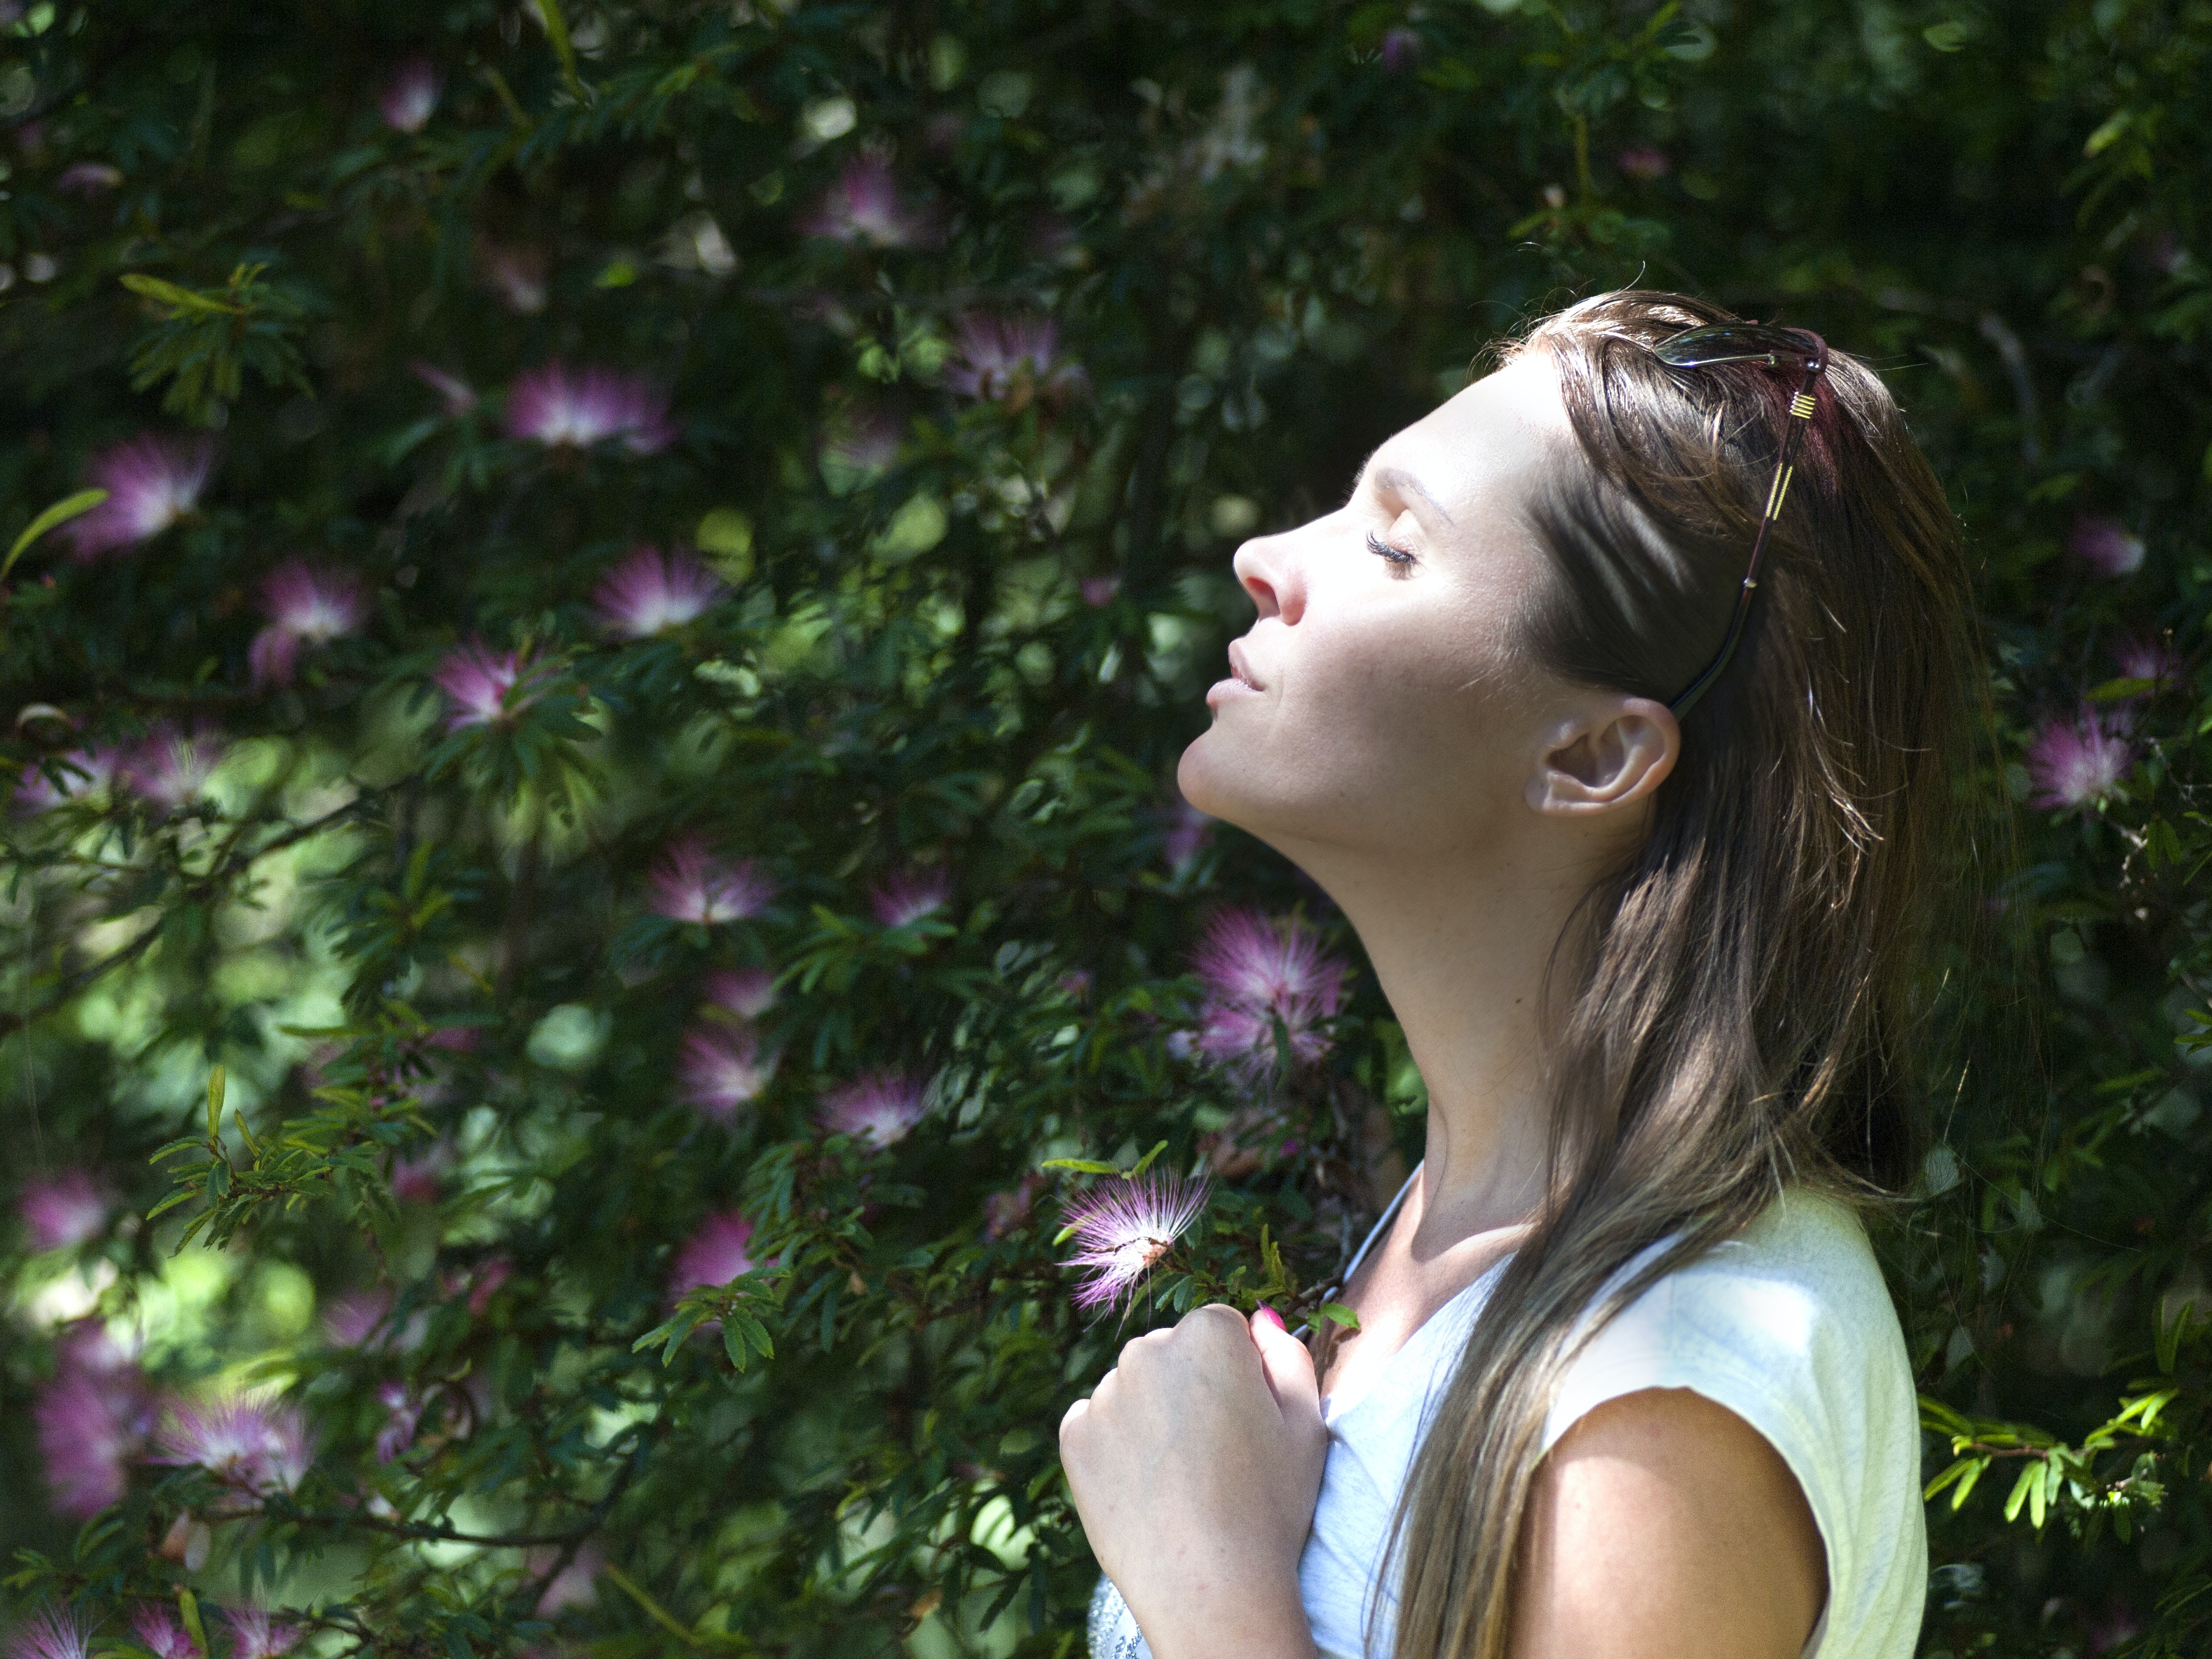  Haal diep adem: De kracht van een goede ademhaling onthult